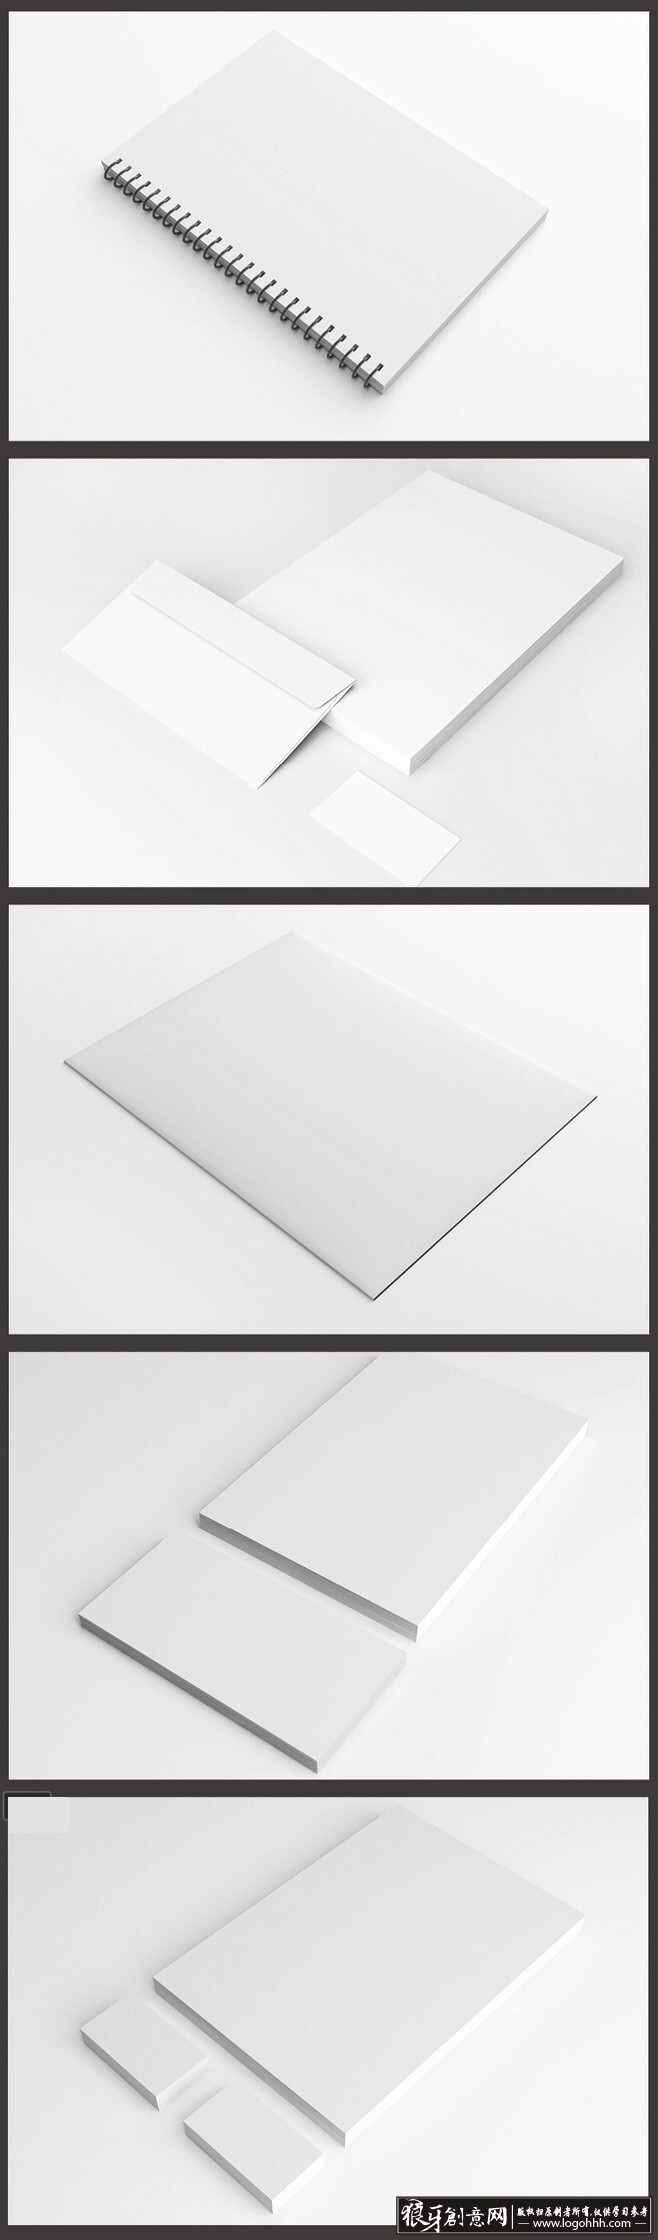 贴图样机 空白vi设计模板智能贴图 有效提高设计逼格的空白vi贴图模板